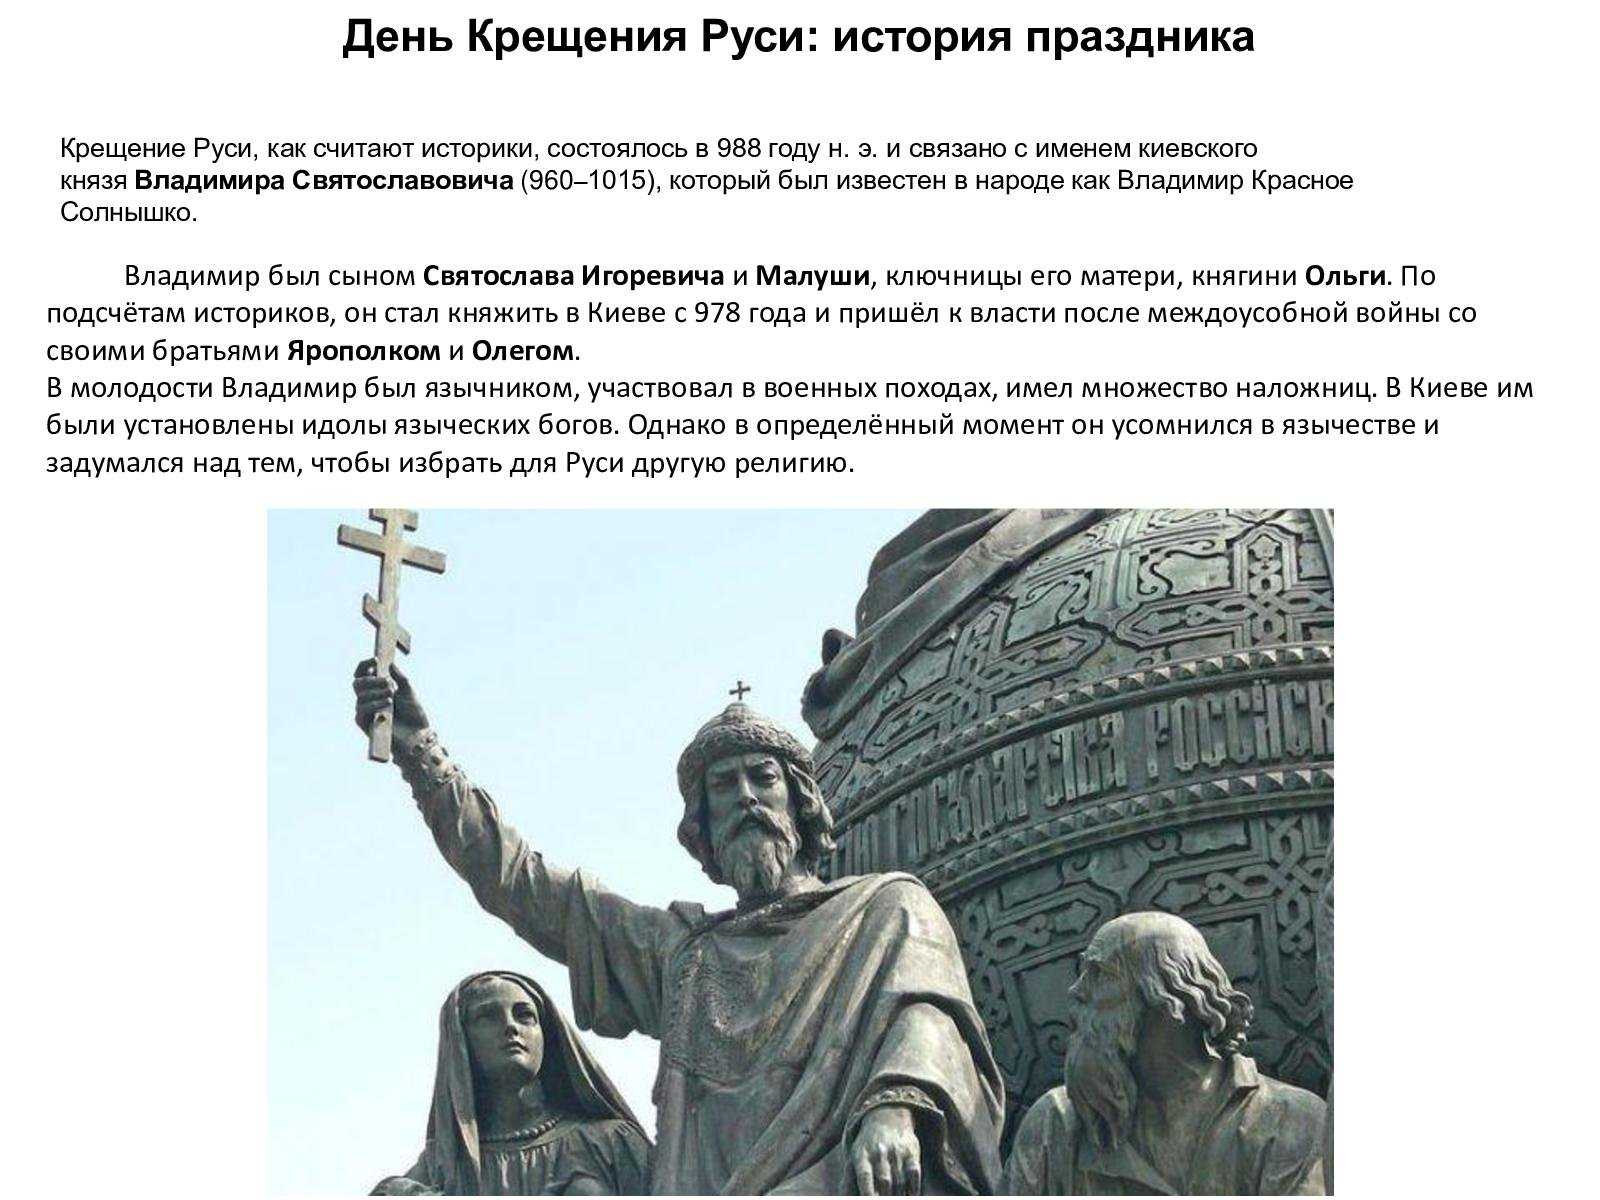 Крещение руси кратко: причины и дата принятия христианства владимиром